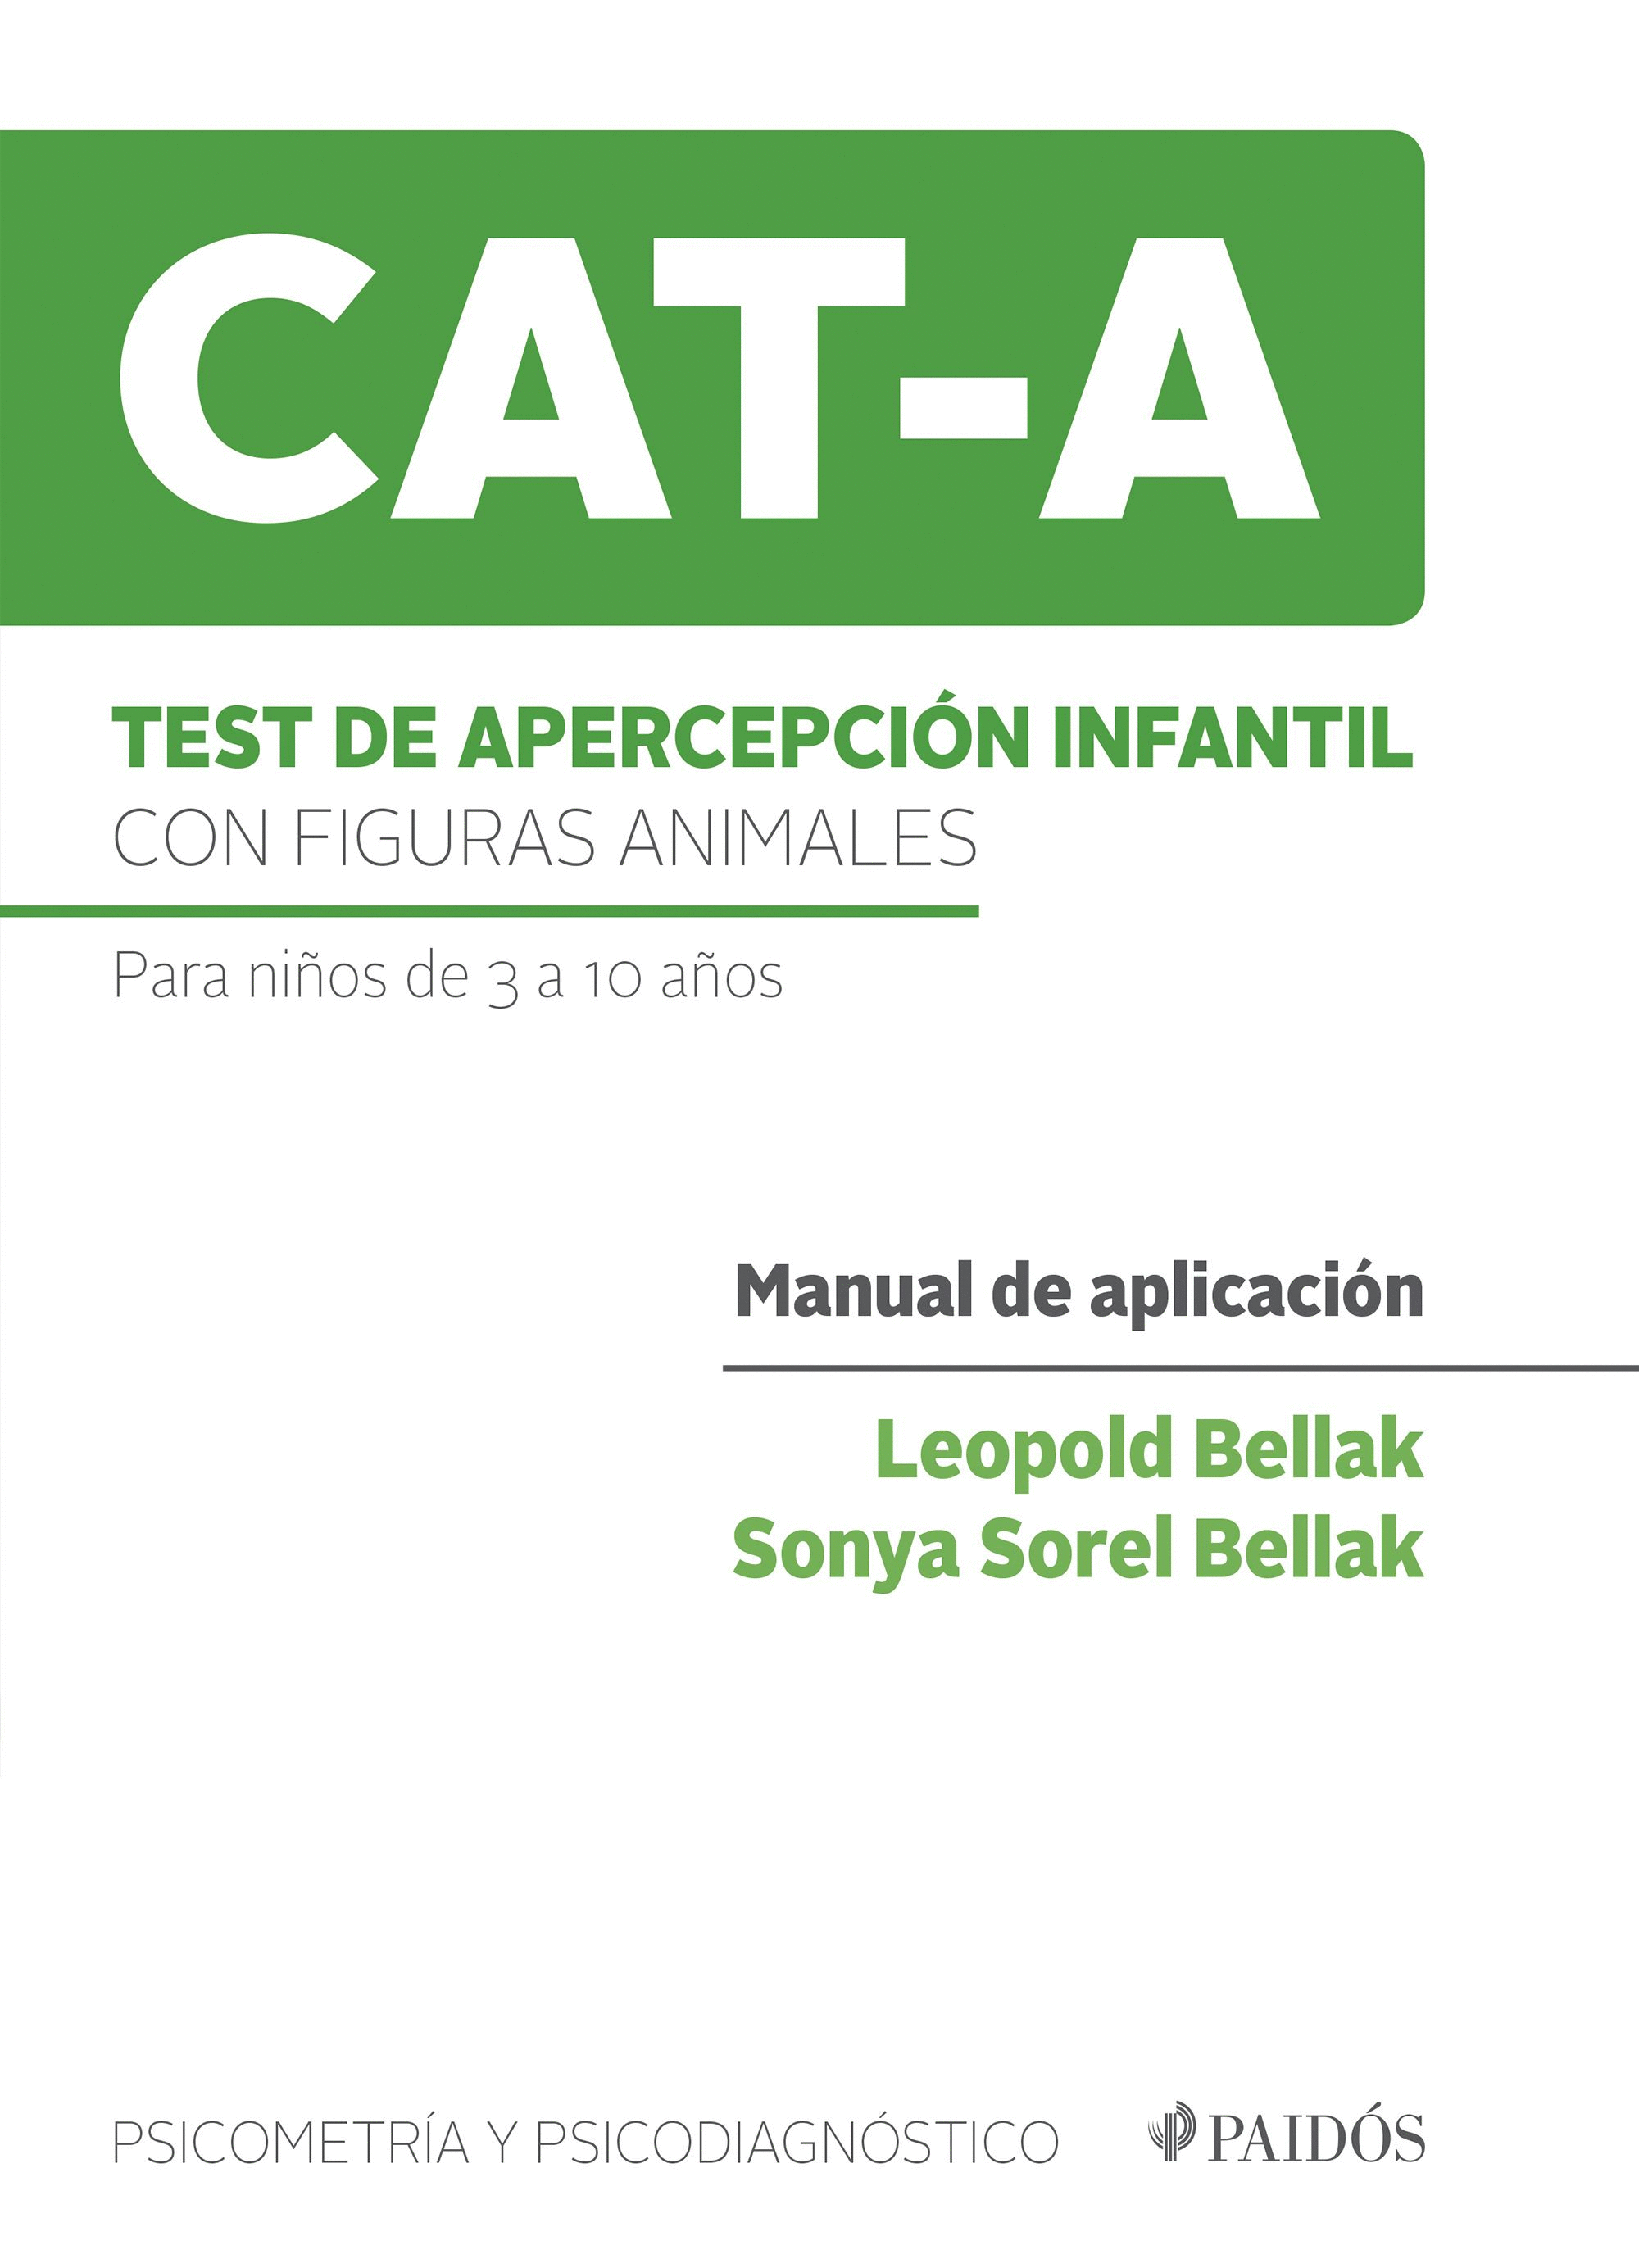 TEST DE APERCEPCIÓN INFANTIL CON FIGURAS ANIMALES (CAT-A)